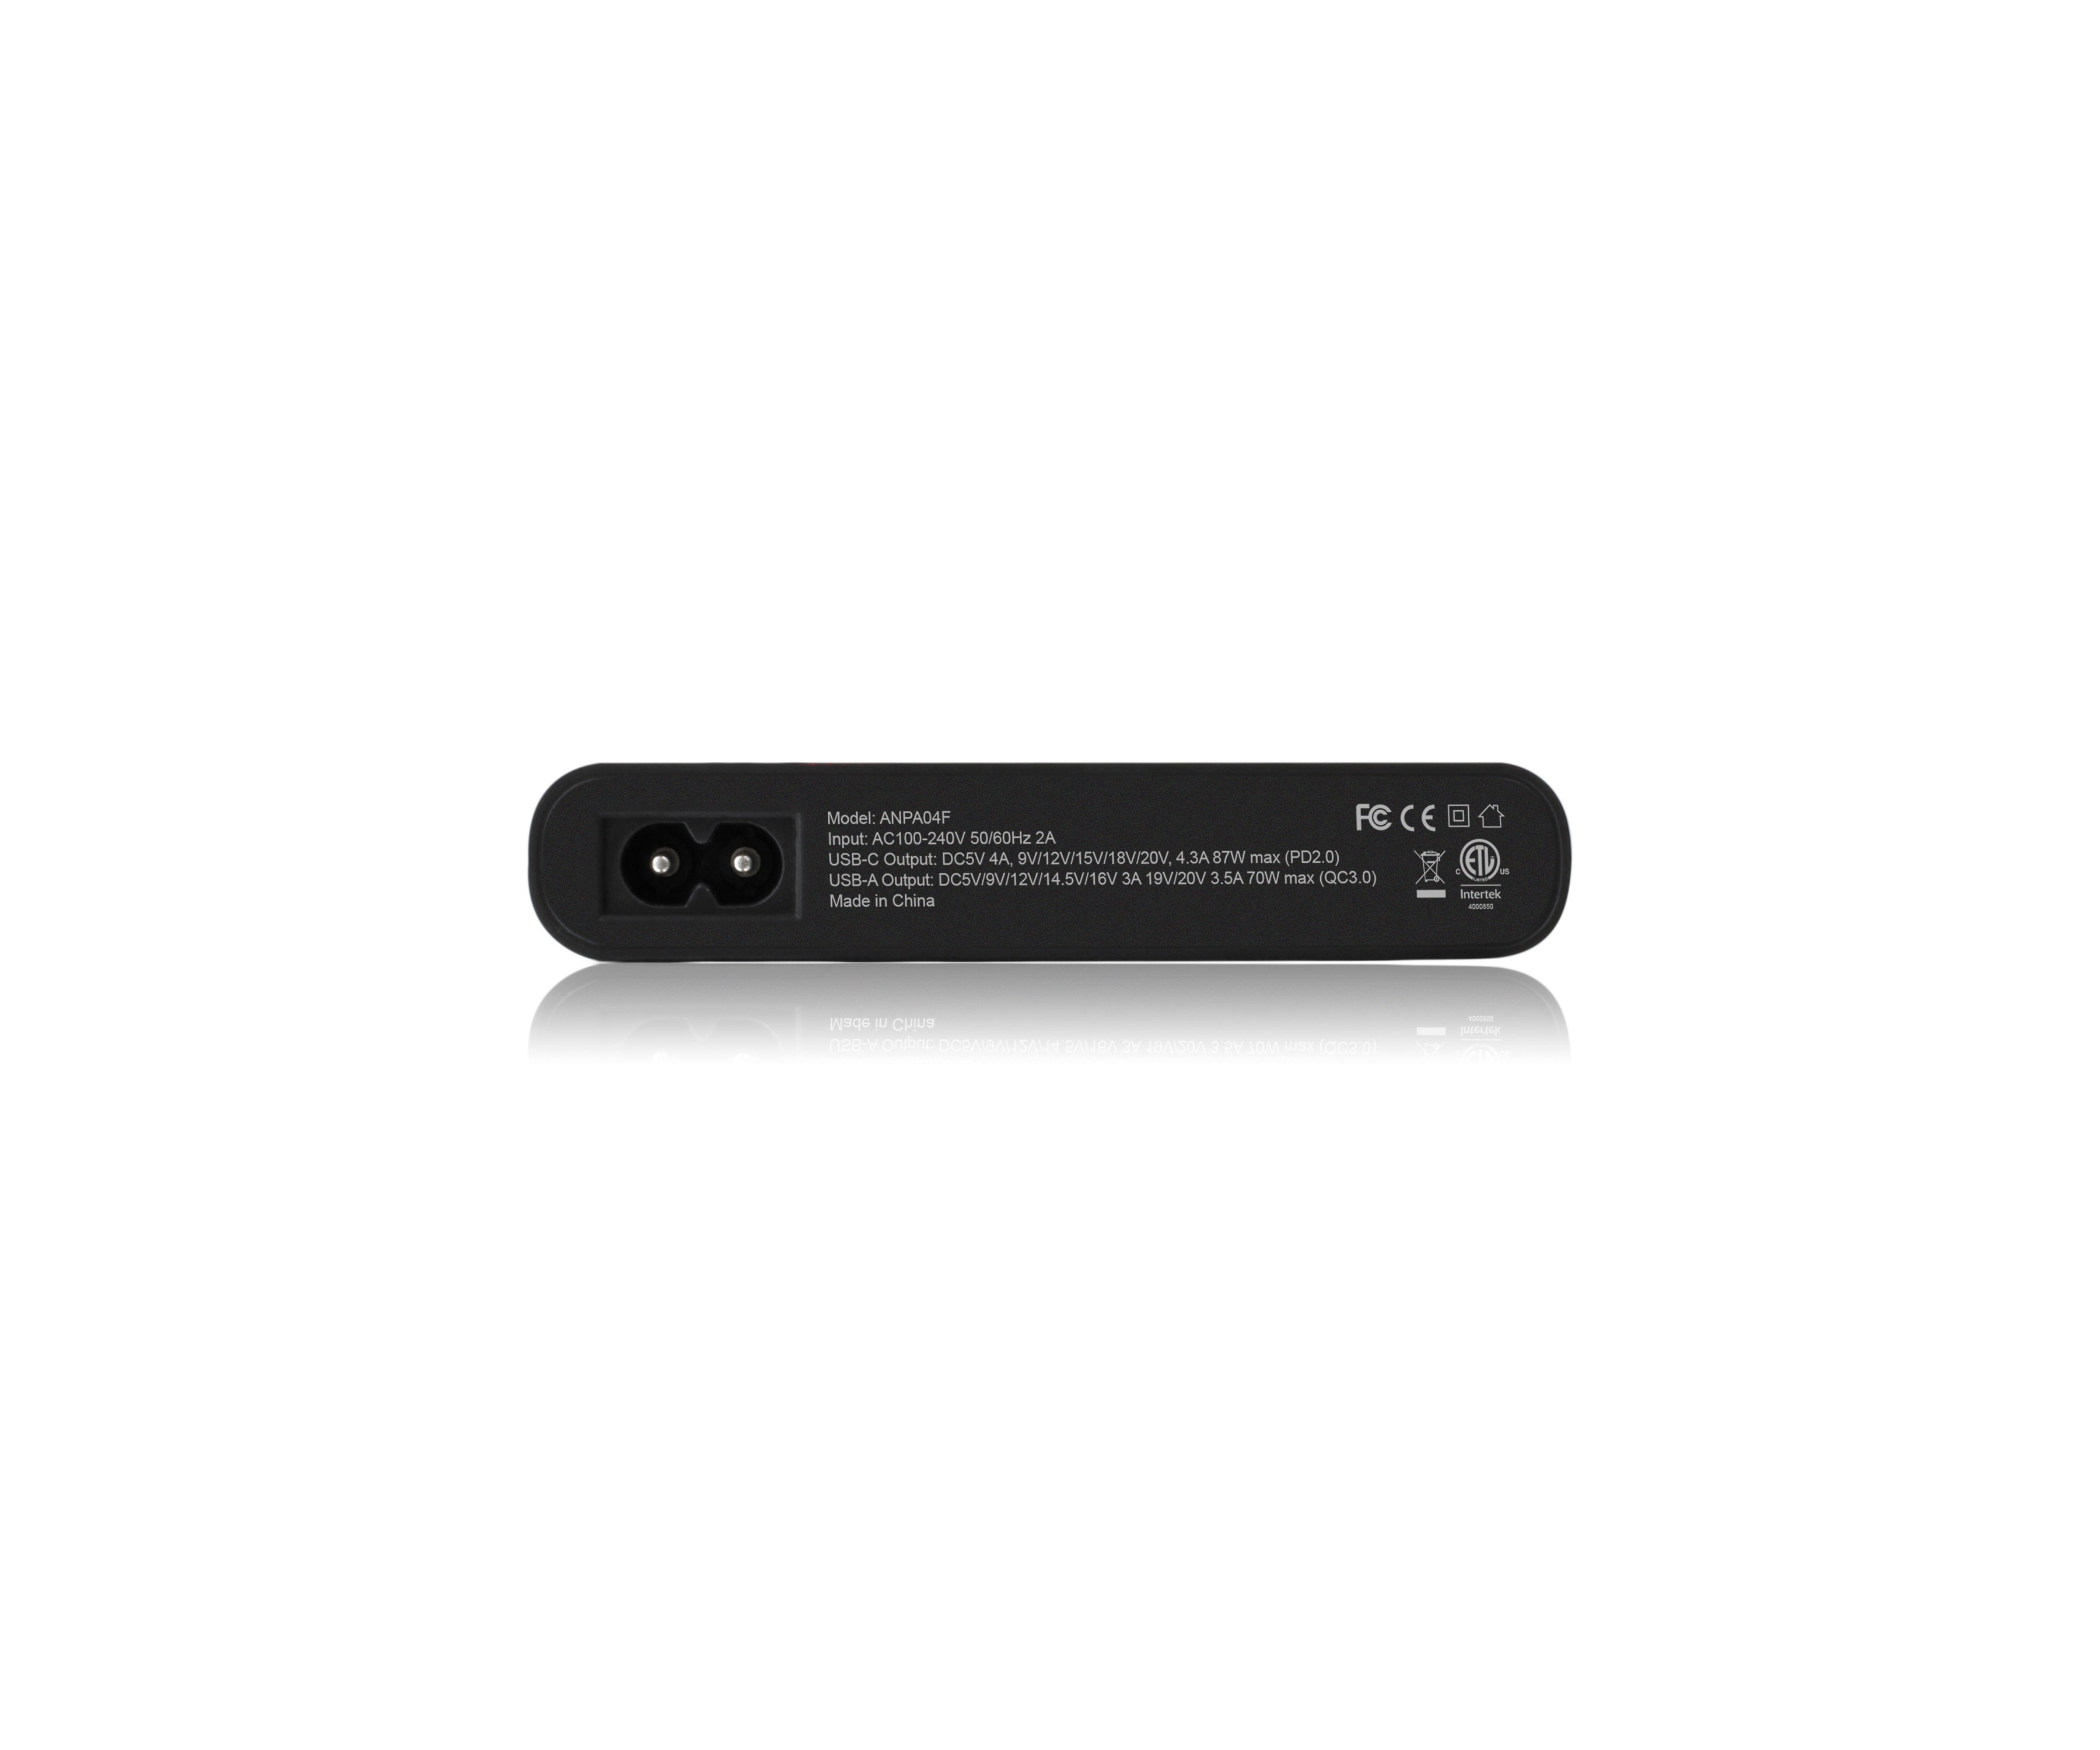 SDTEK Chargeur de câble Adaptateur d'alimentation USB Universel